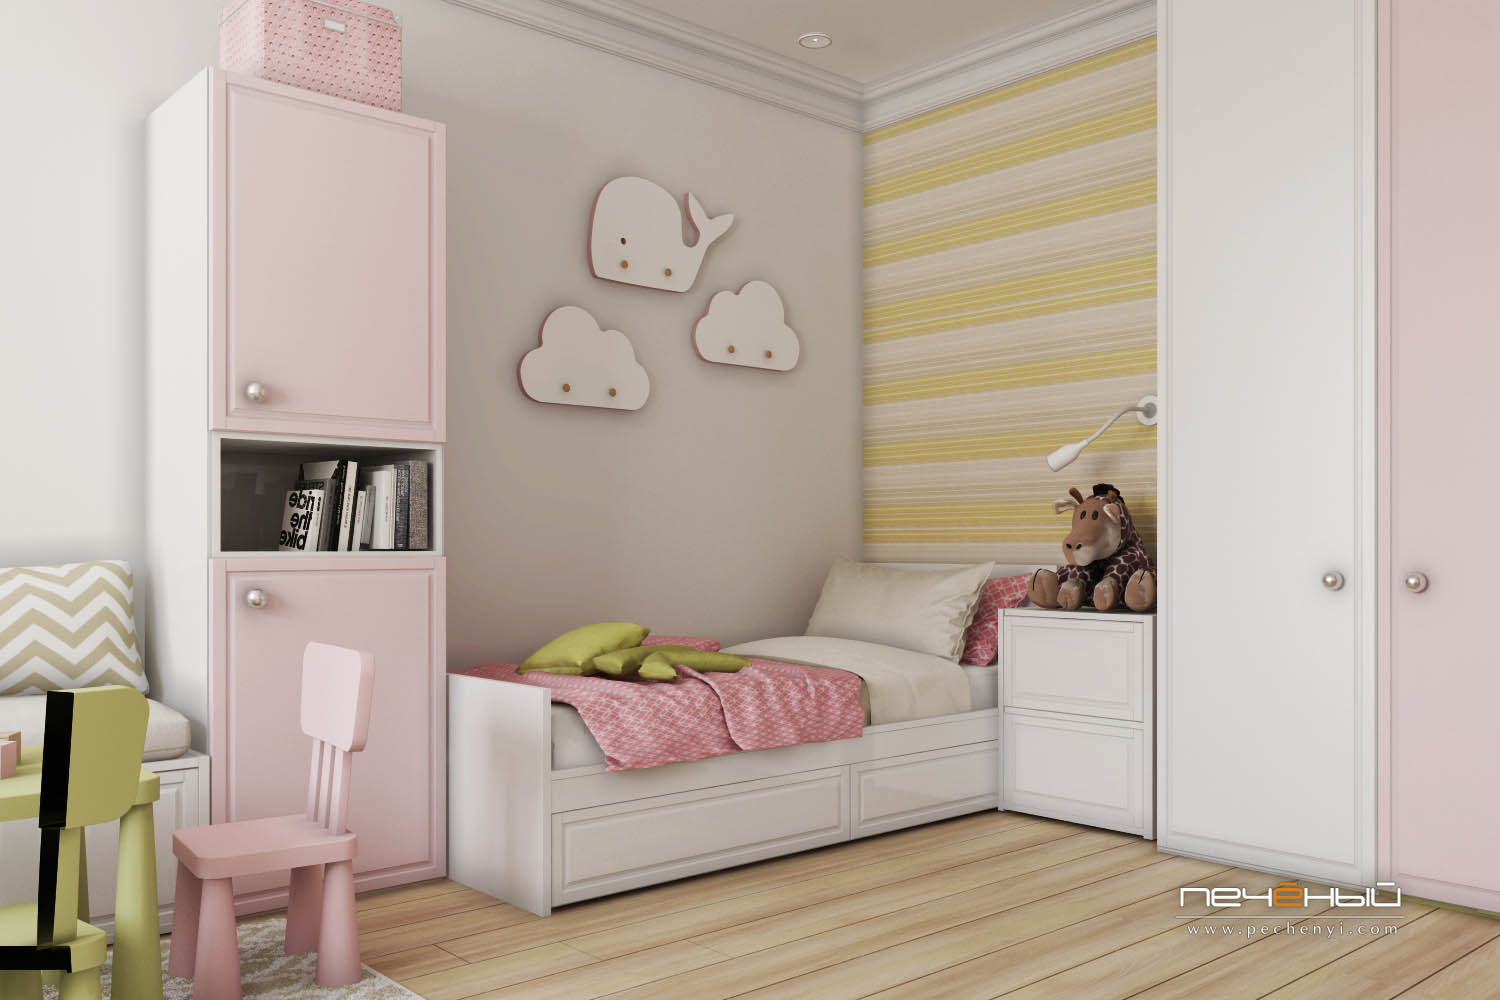 Особенности проектирования детской комнаты: функциональный дизайн детской для мальчика или девочки